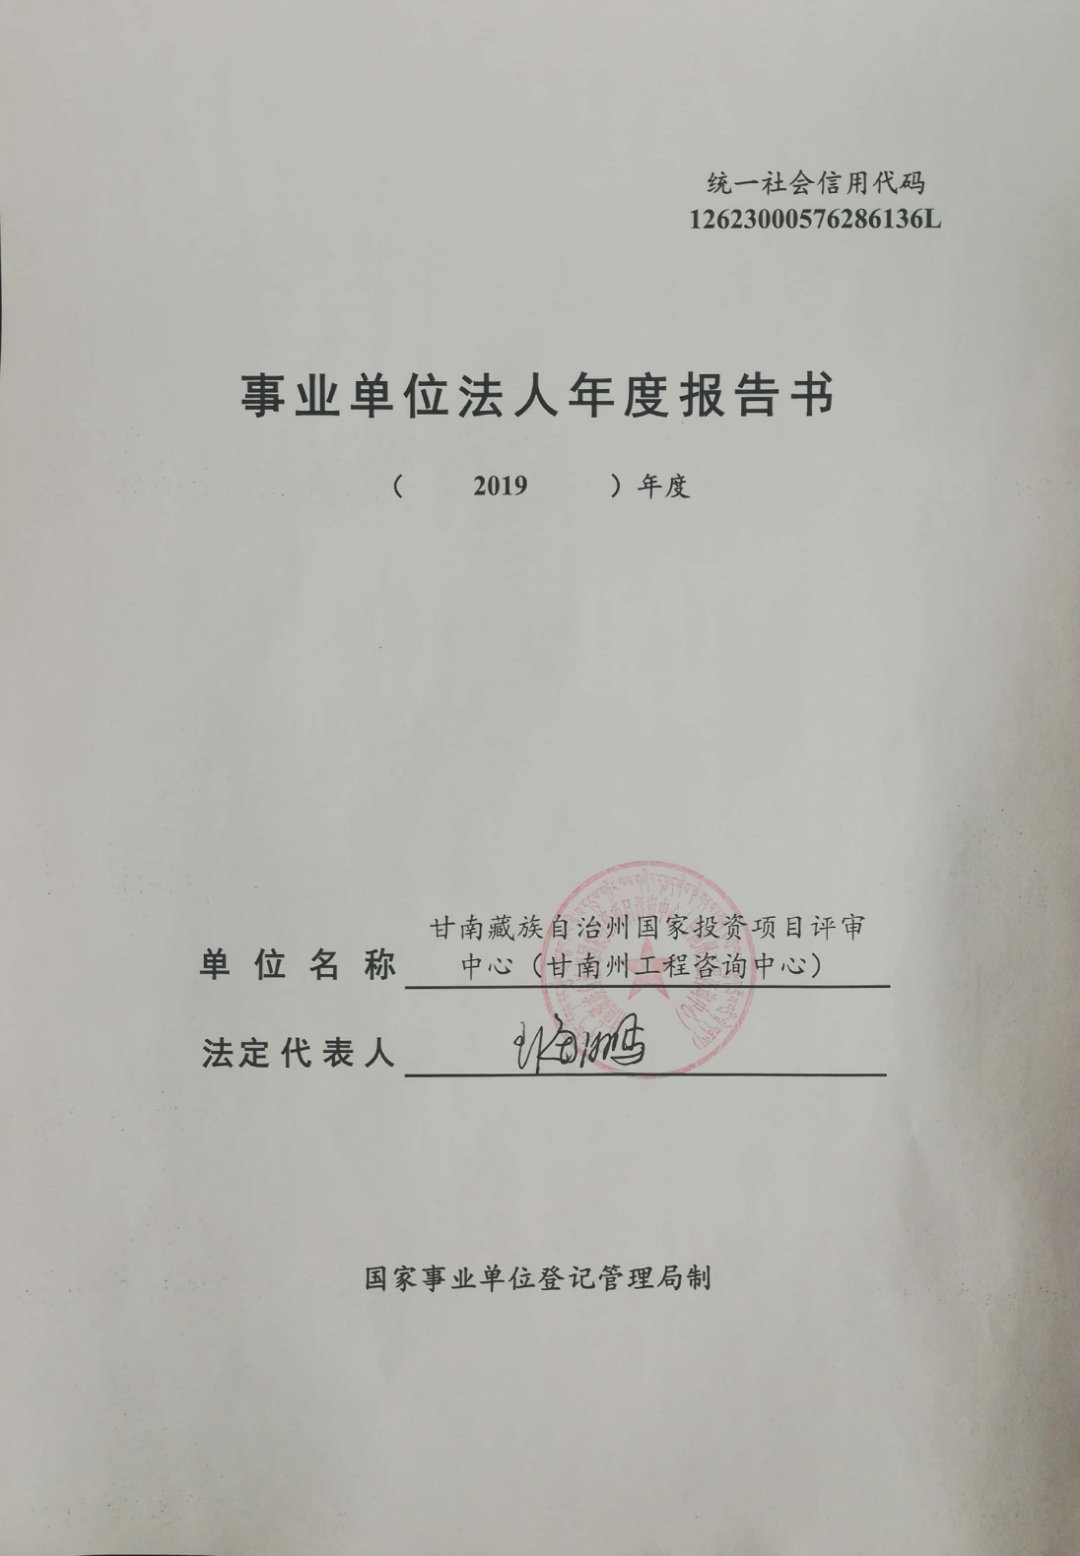 关于甘南藏族自治州国家投资项目评审中心（甘南州工程咨询中心）事业单位法人2019年度报告工作的公示